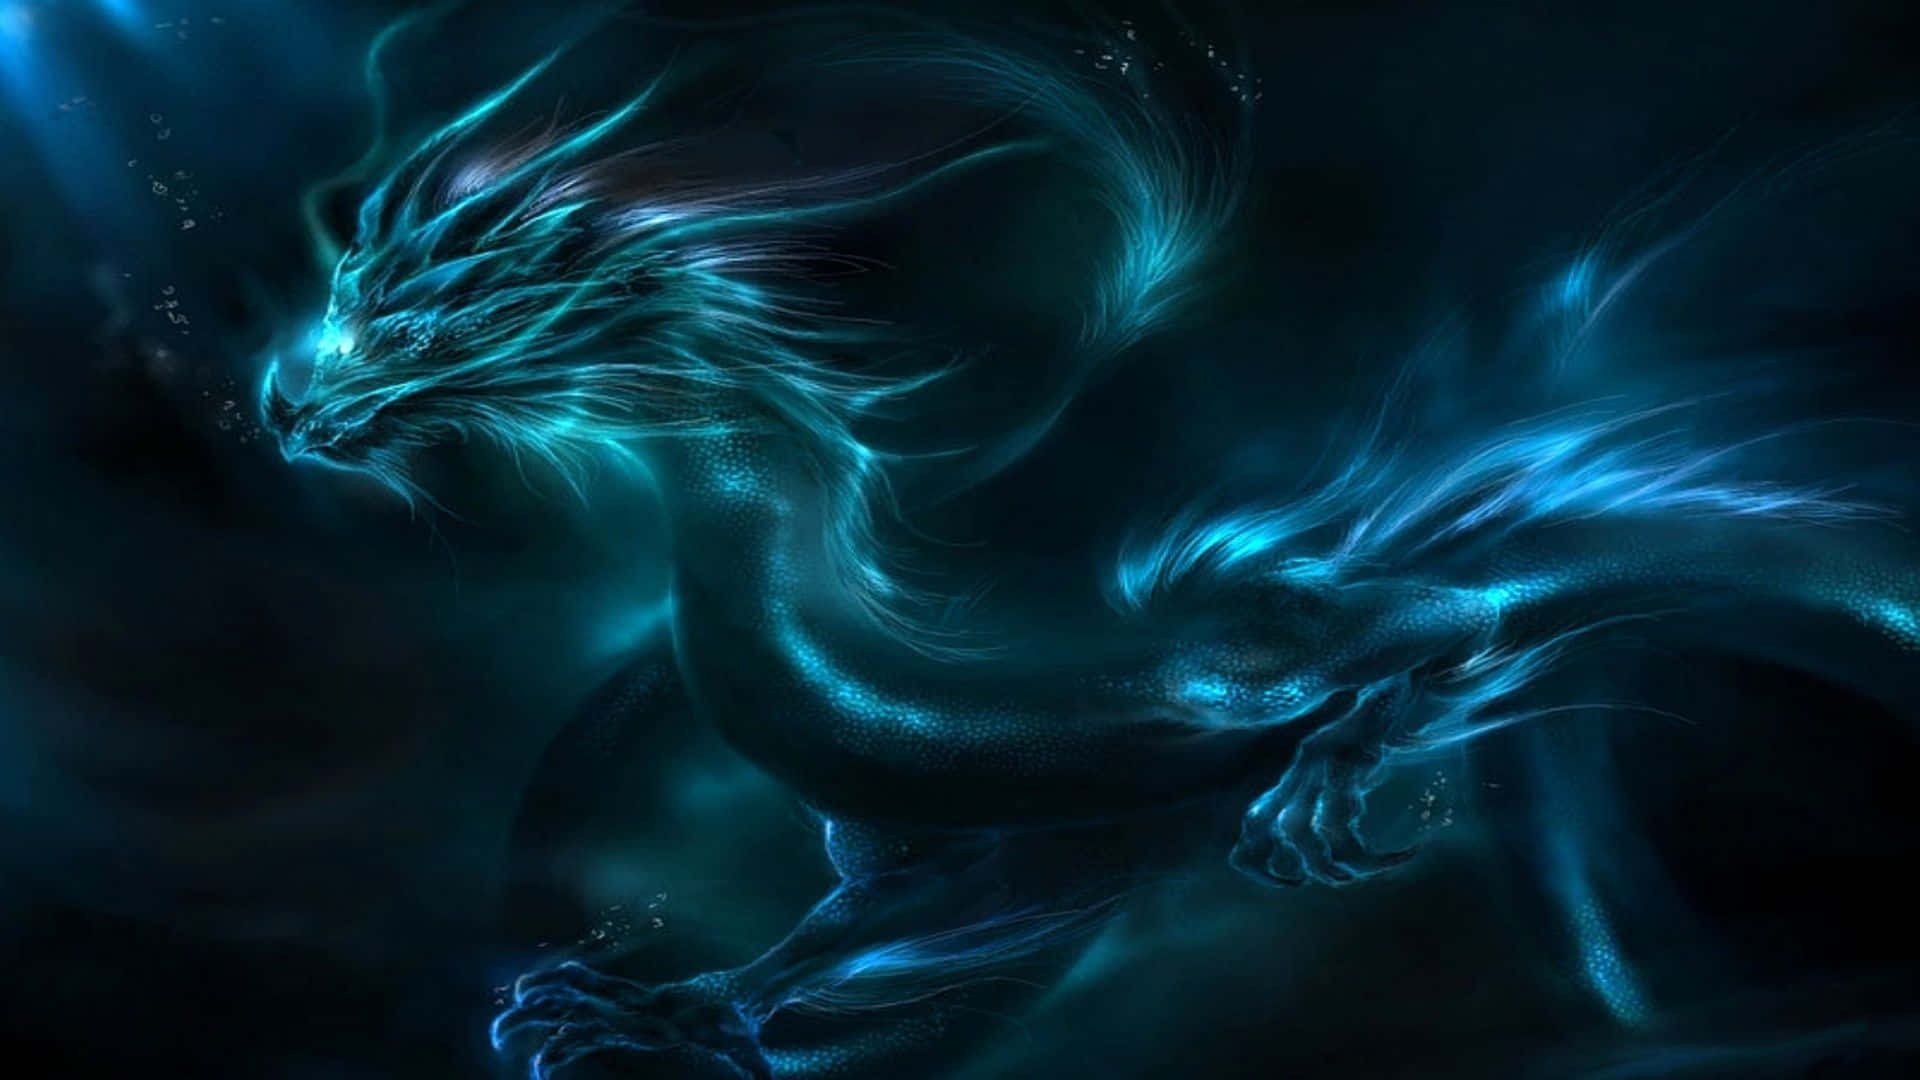 1080p Blue Lightning Dragon Wallpaper